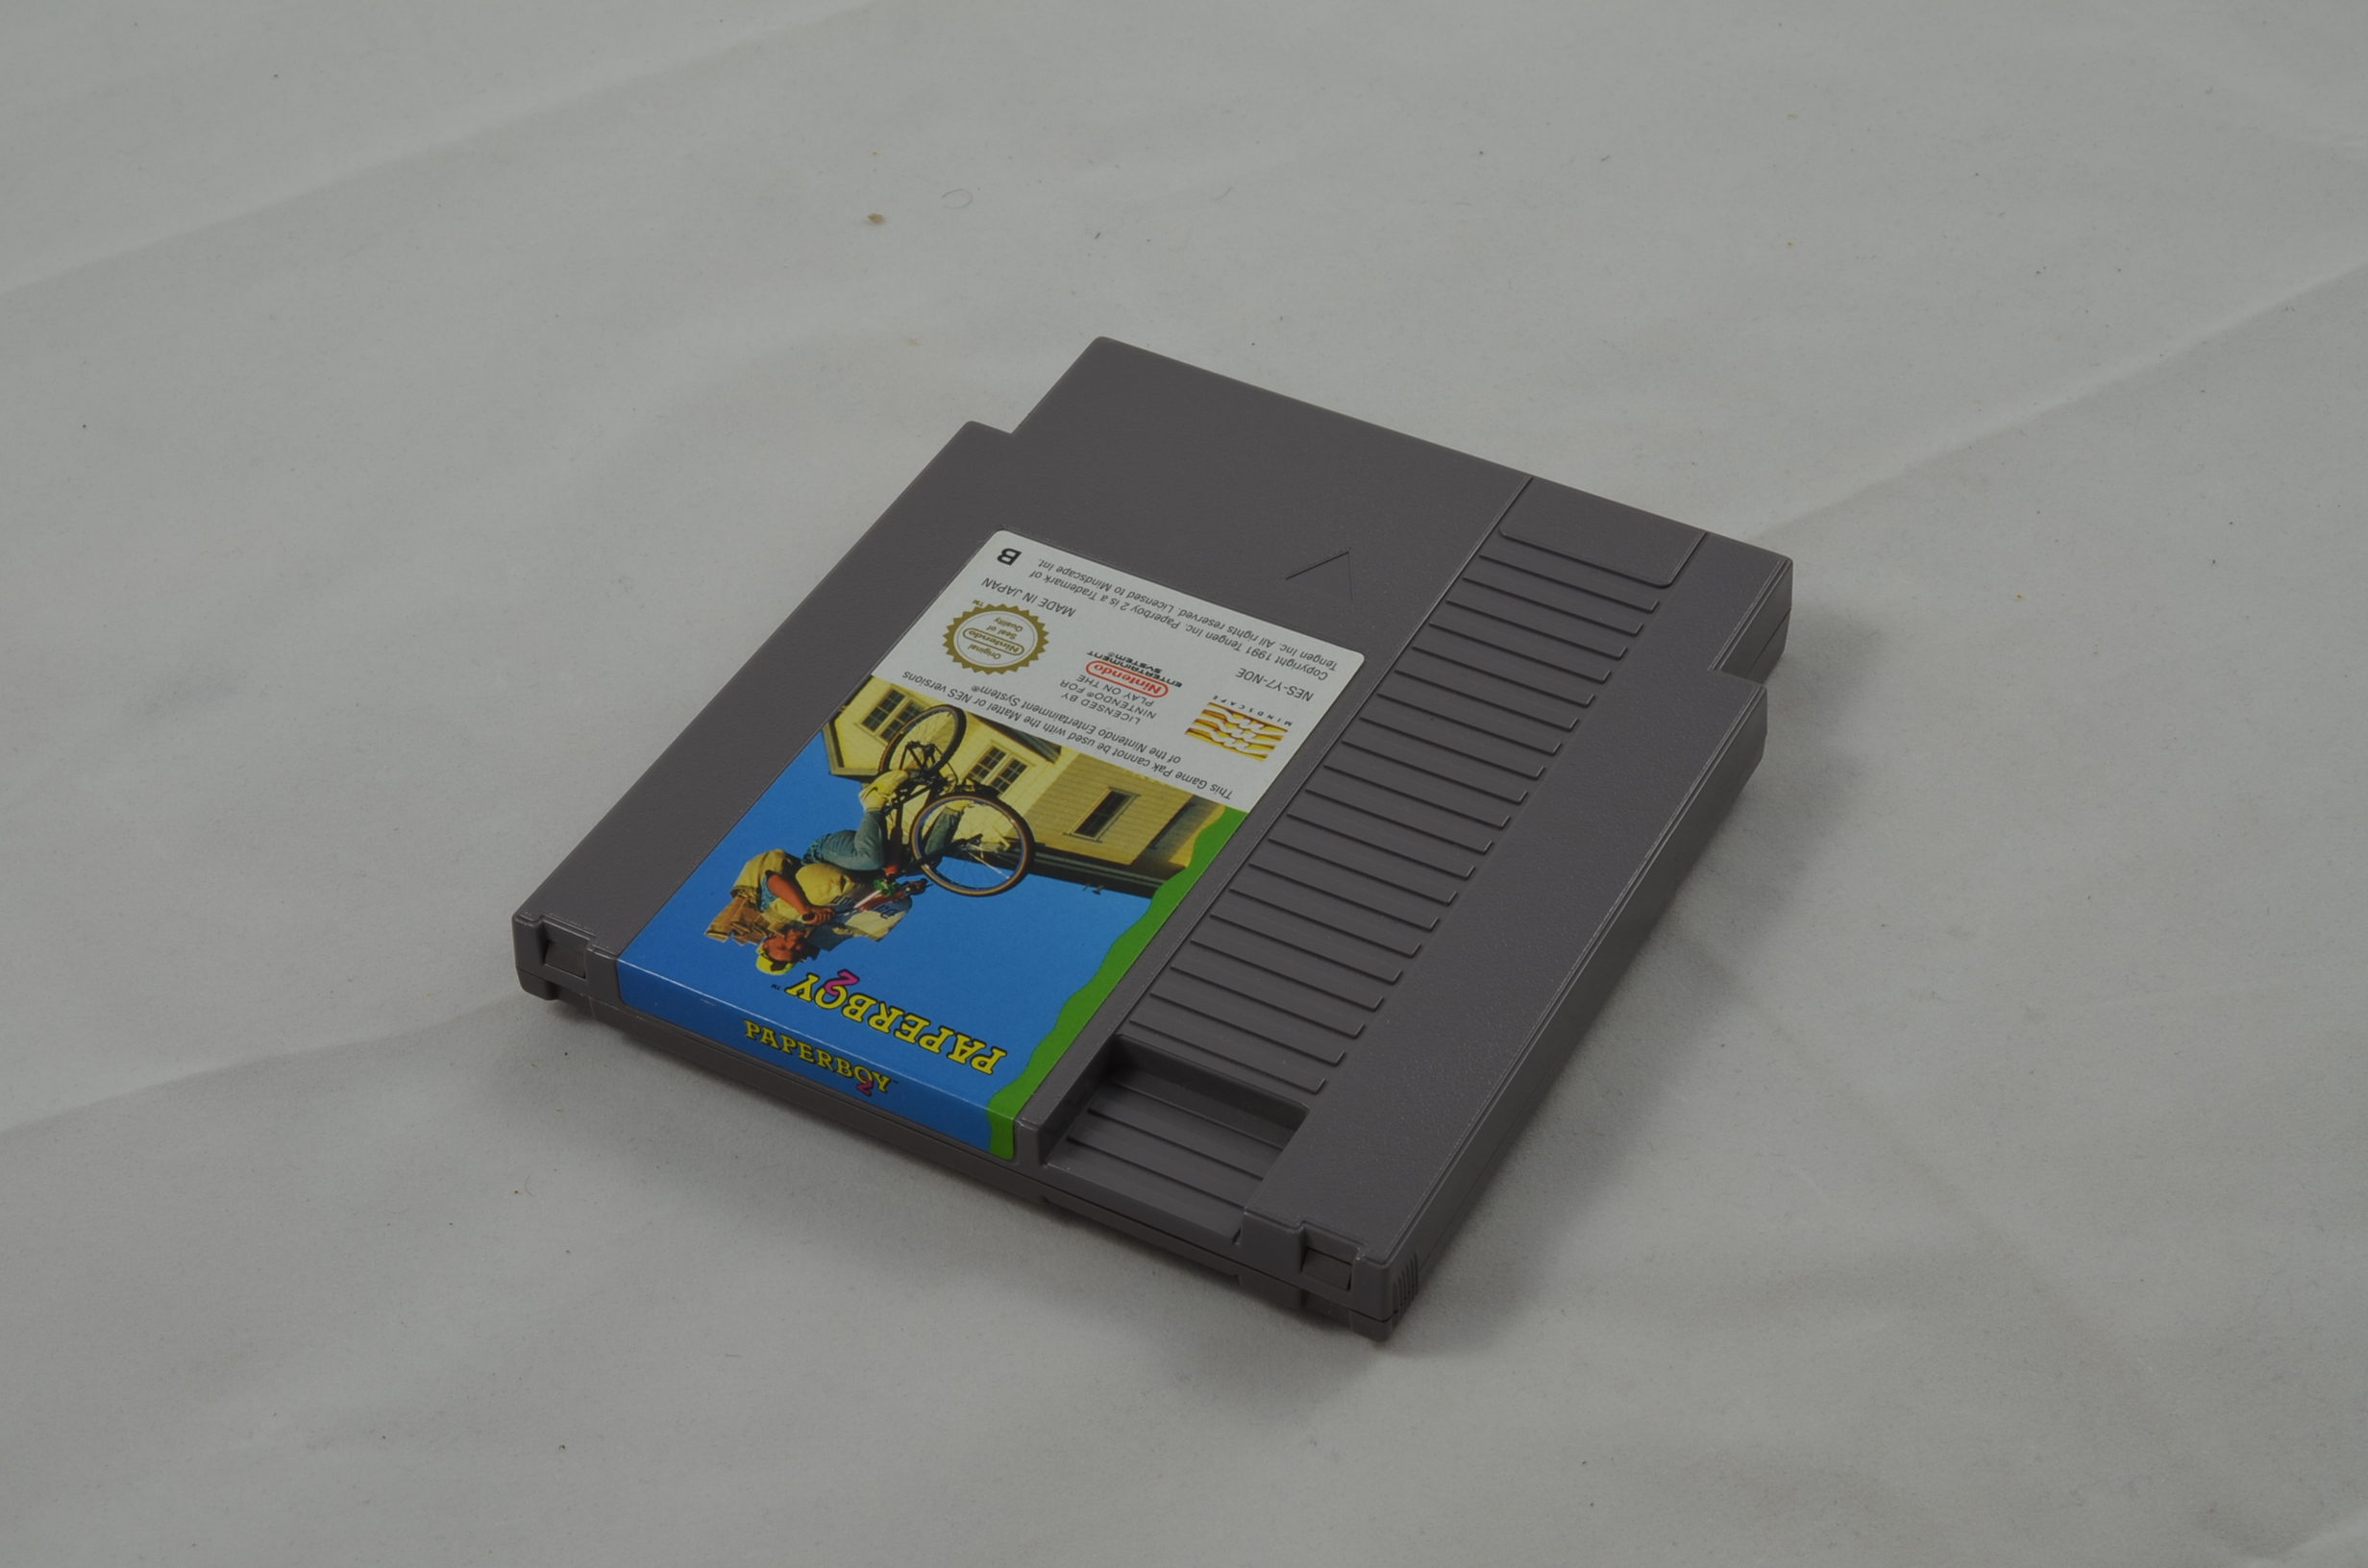 Produktbild von Paperboy 2 NES Spiel